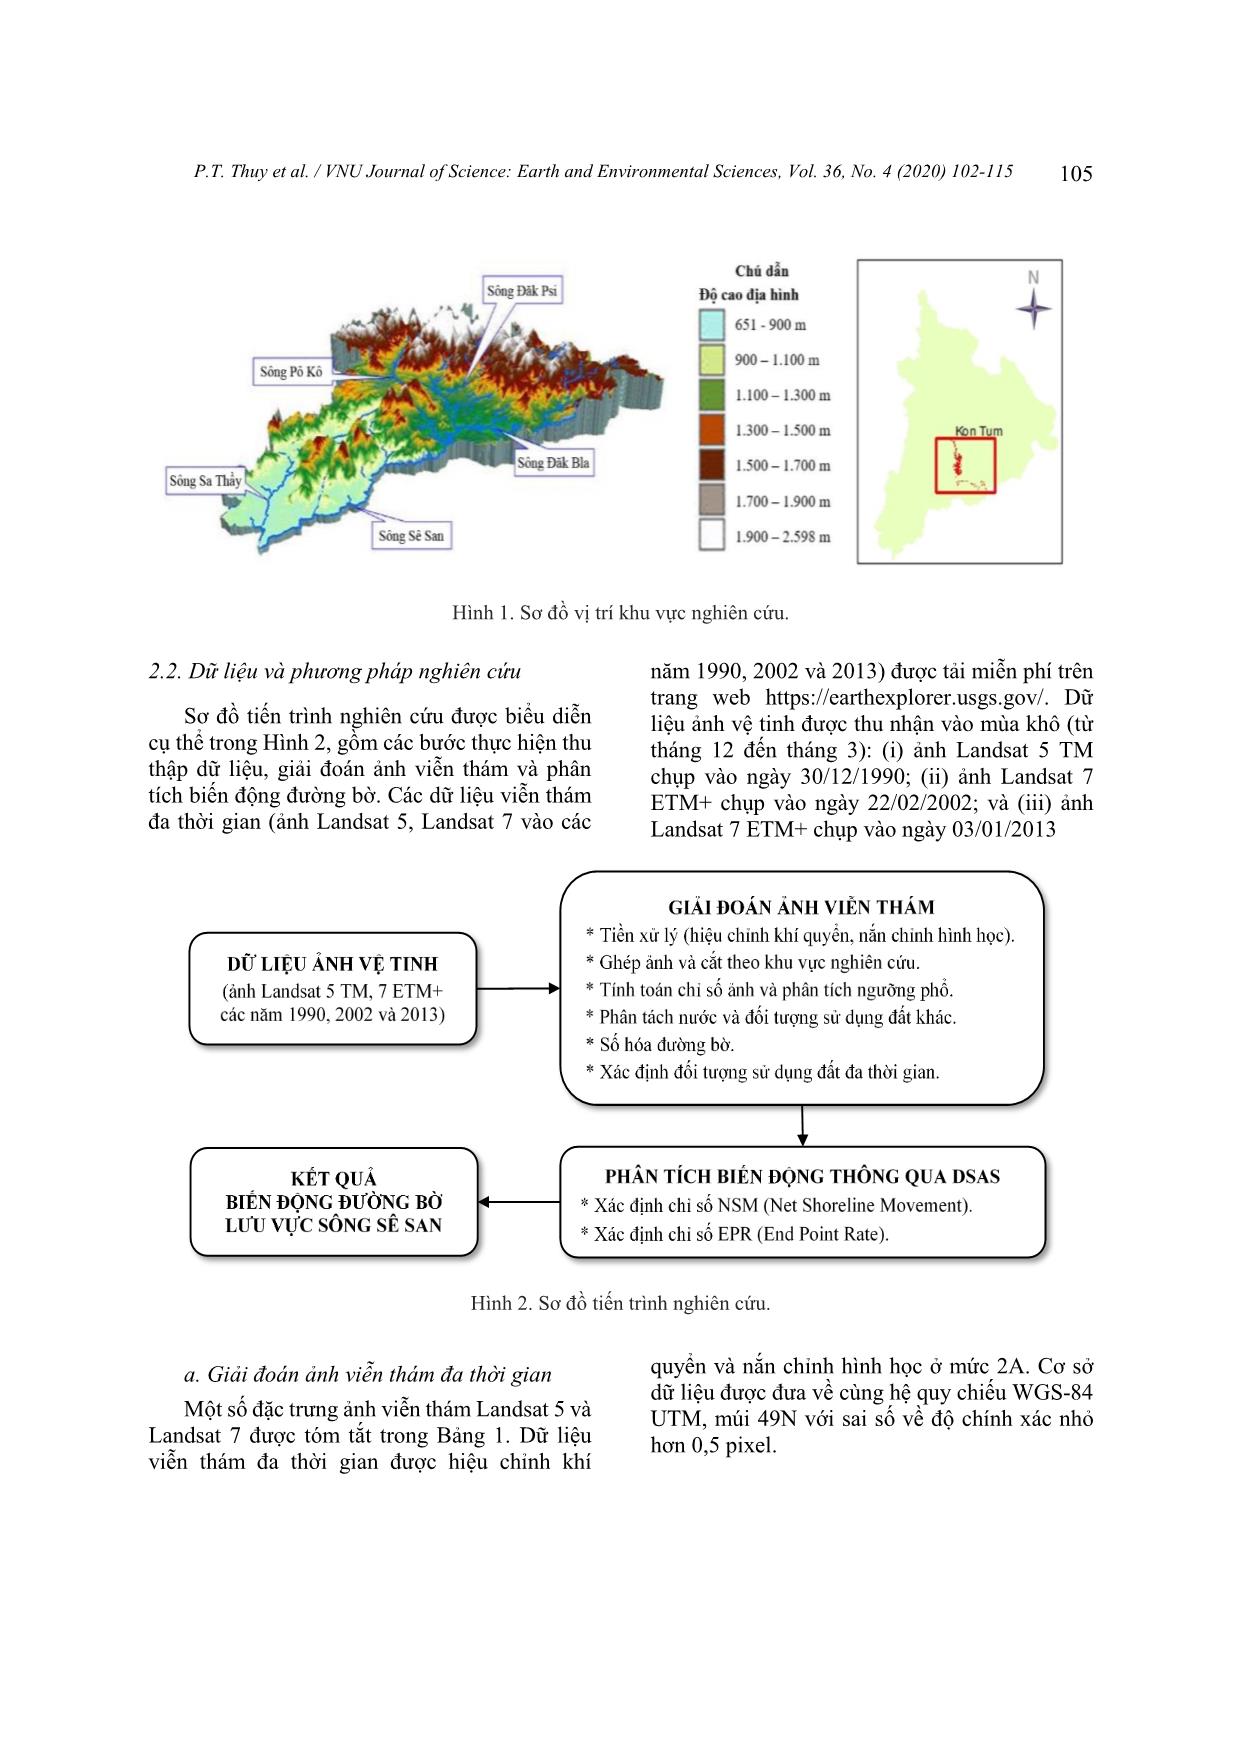 Nghiên cứu xác định biến động đường bờ thượng lưu sông Sê San, tỉnh Kontum trên cơ sở phân tích dữ liệu viễn thám đa thời gian trang 4